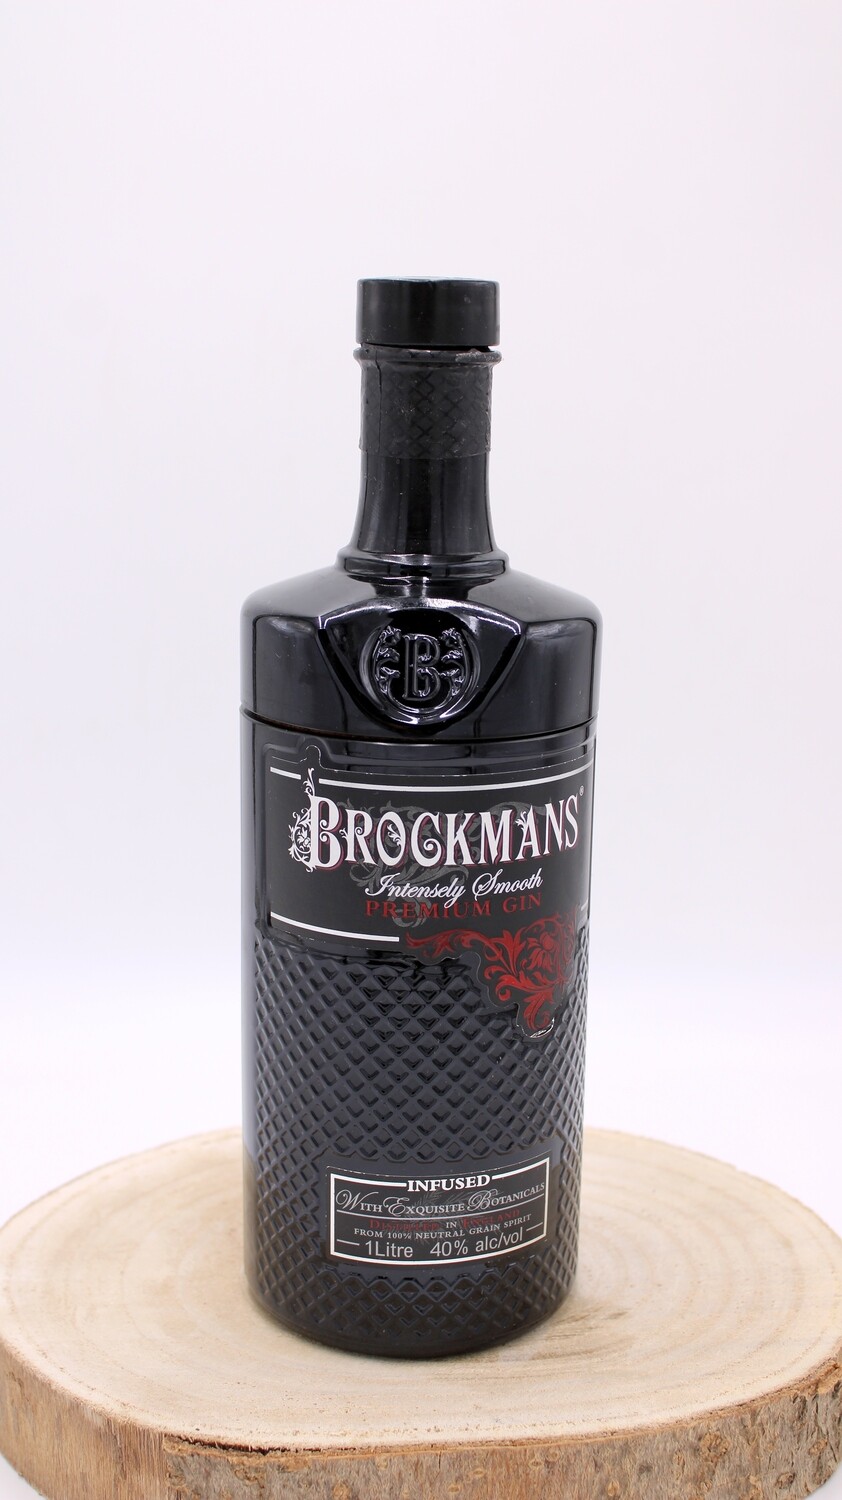 Bottiglia segreta Brockman's